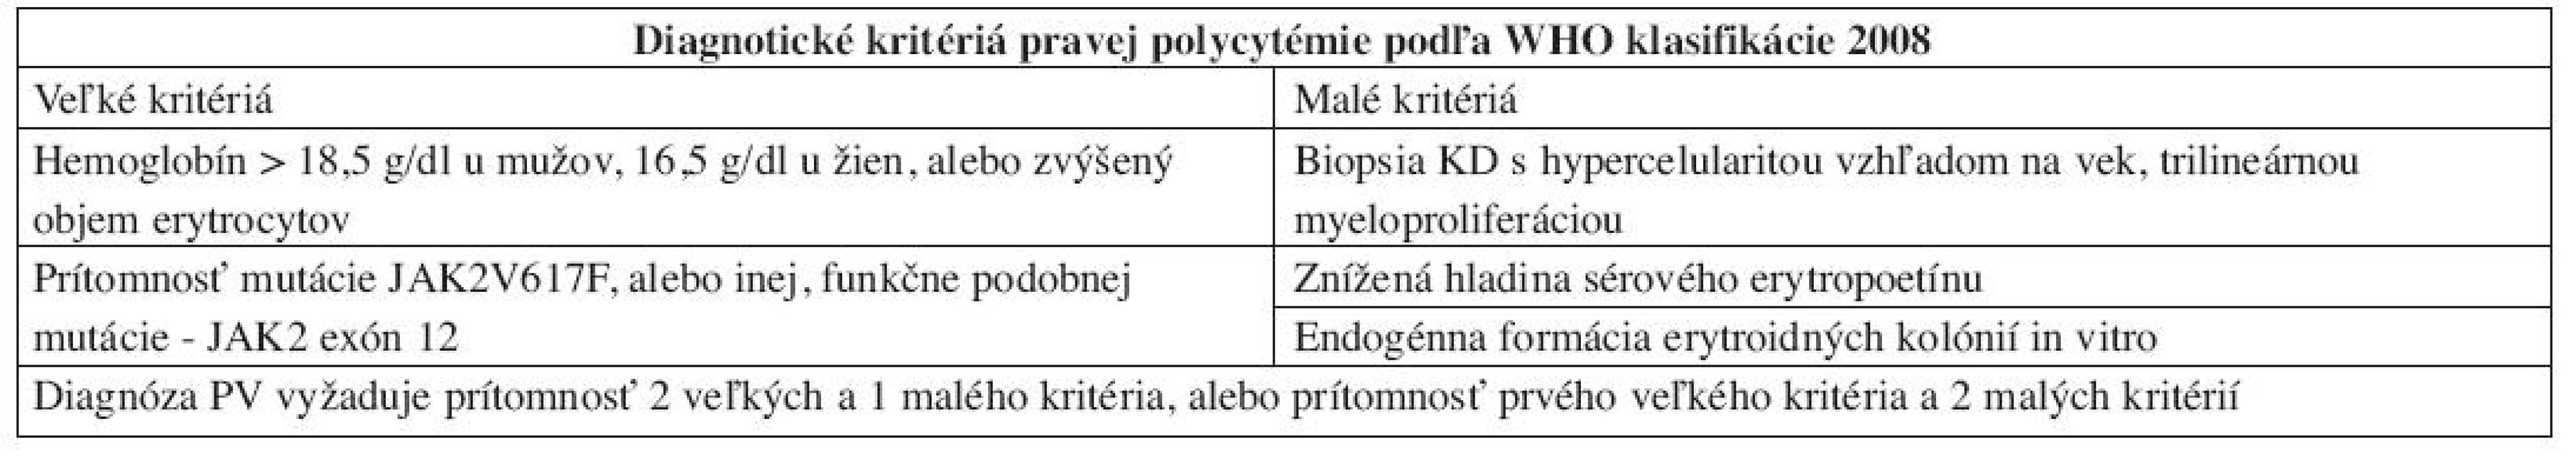 Diagnostické kritériá PV podľa WHO klasifikácie 2008.